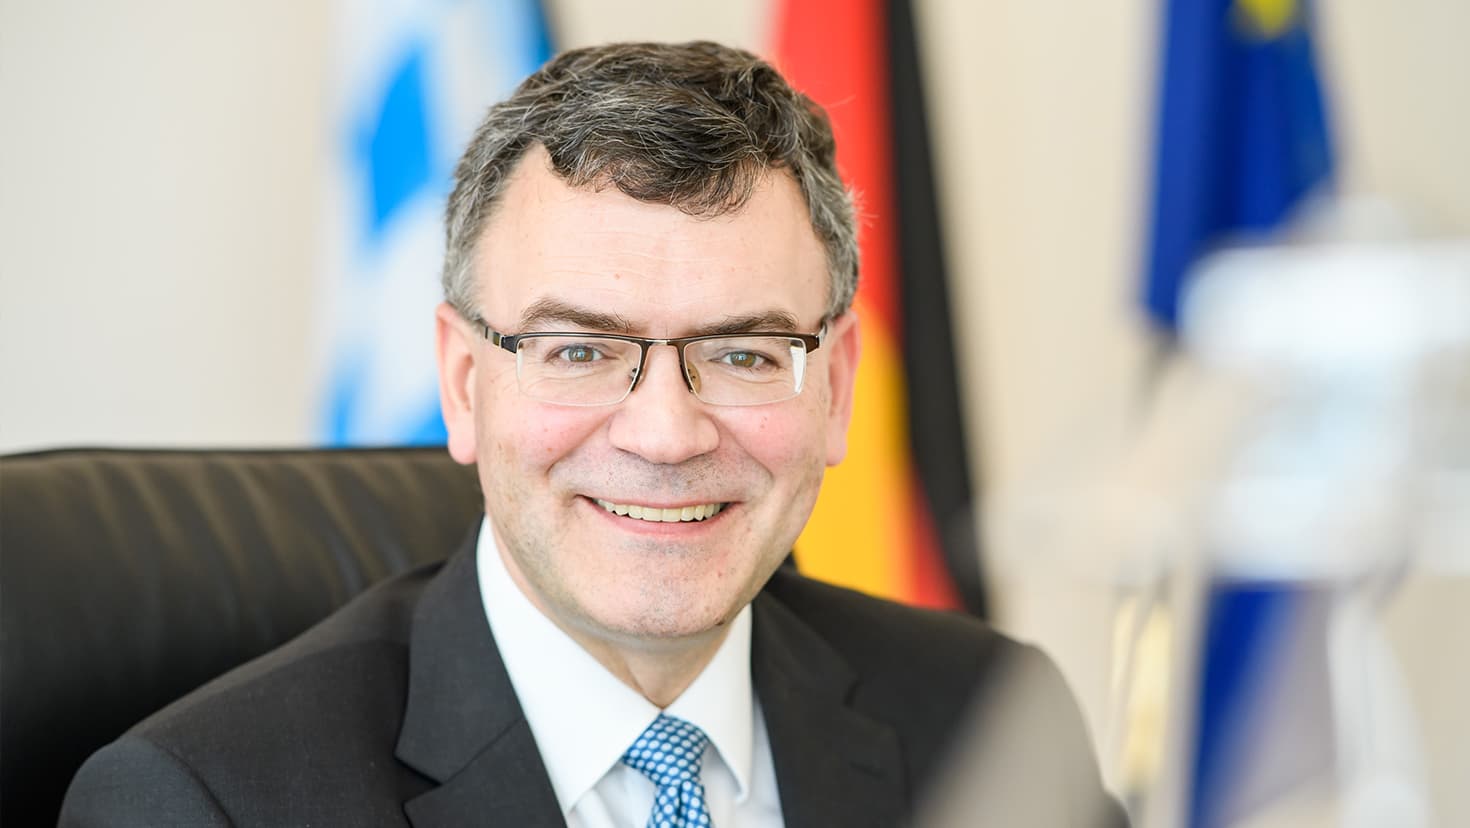 Staatsminister Dr. Florian Herrmann, MdL, sitzt an seinem Schreibtisch in der Staatskanzlei. Im Hintergrund sind die Flaggen des Freistaats Bayern, der Bundesrepublik Deutschland und der Europäischen Union (von links nach rechts) zu sehen.